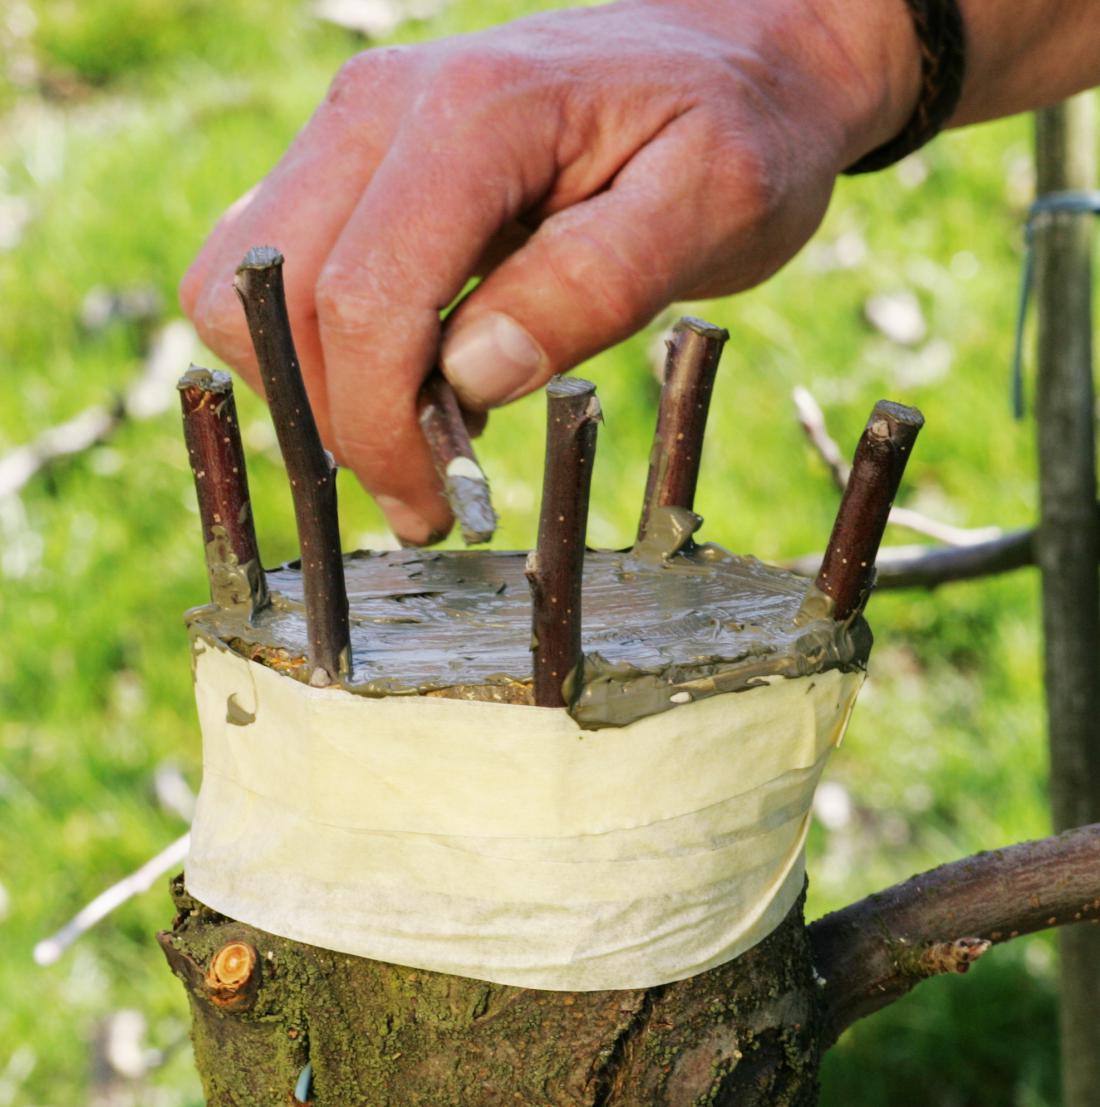 Cepljenje za lub je tehnika, primerna za precepljanje sadnih dreves. Foto: Igor Modic